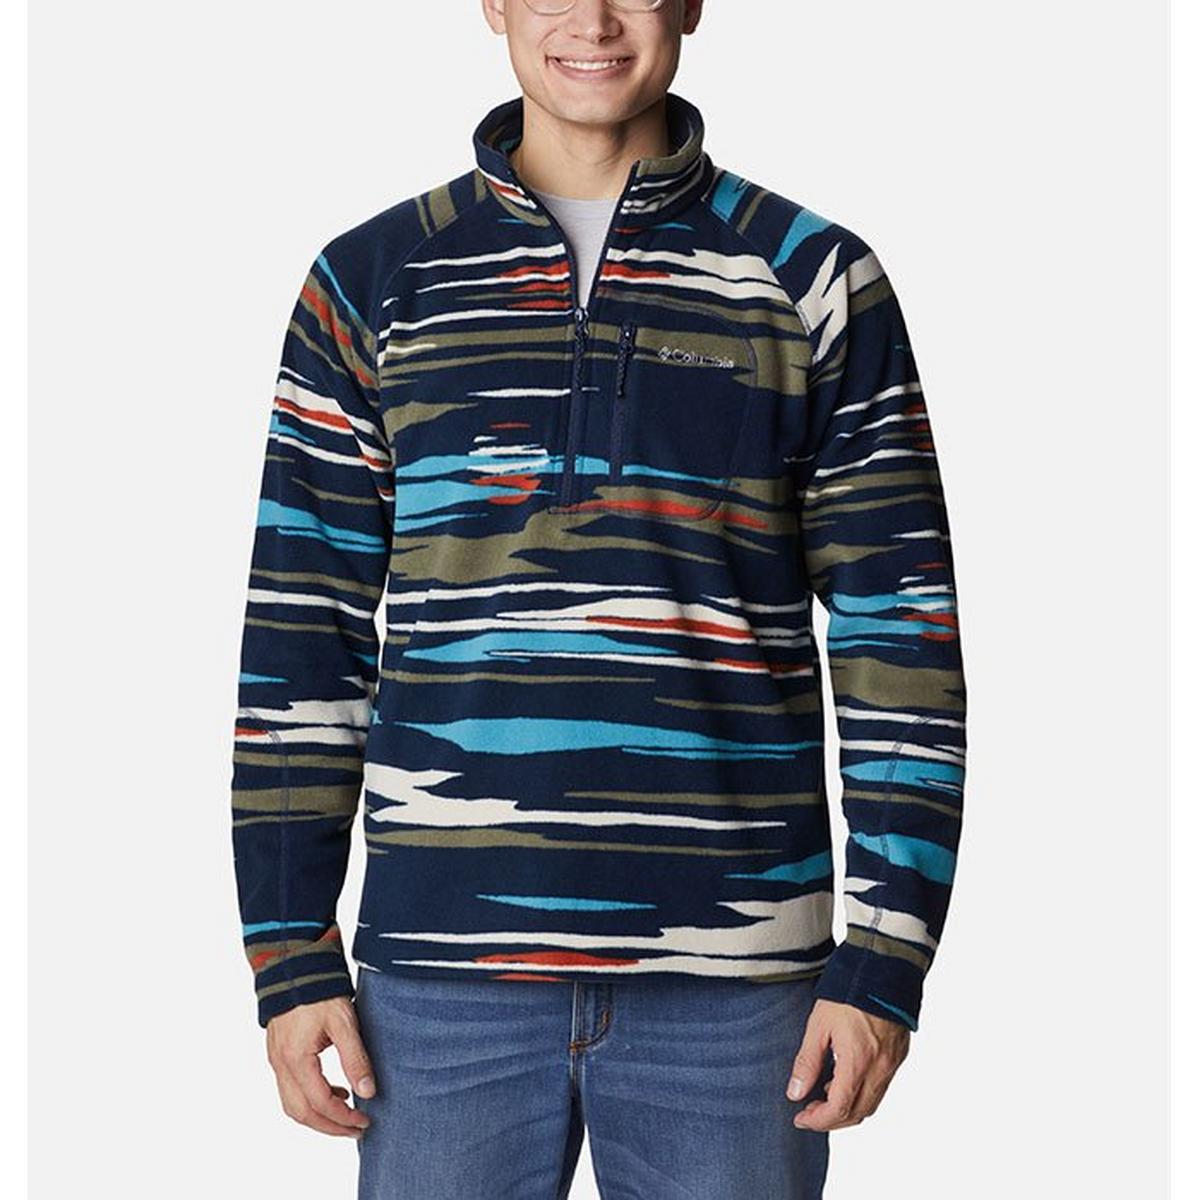 Men's Fast Trek™ Printed Half-Zip Fleece Pullover Top